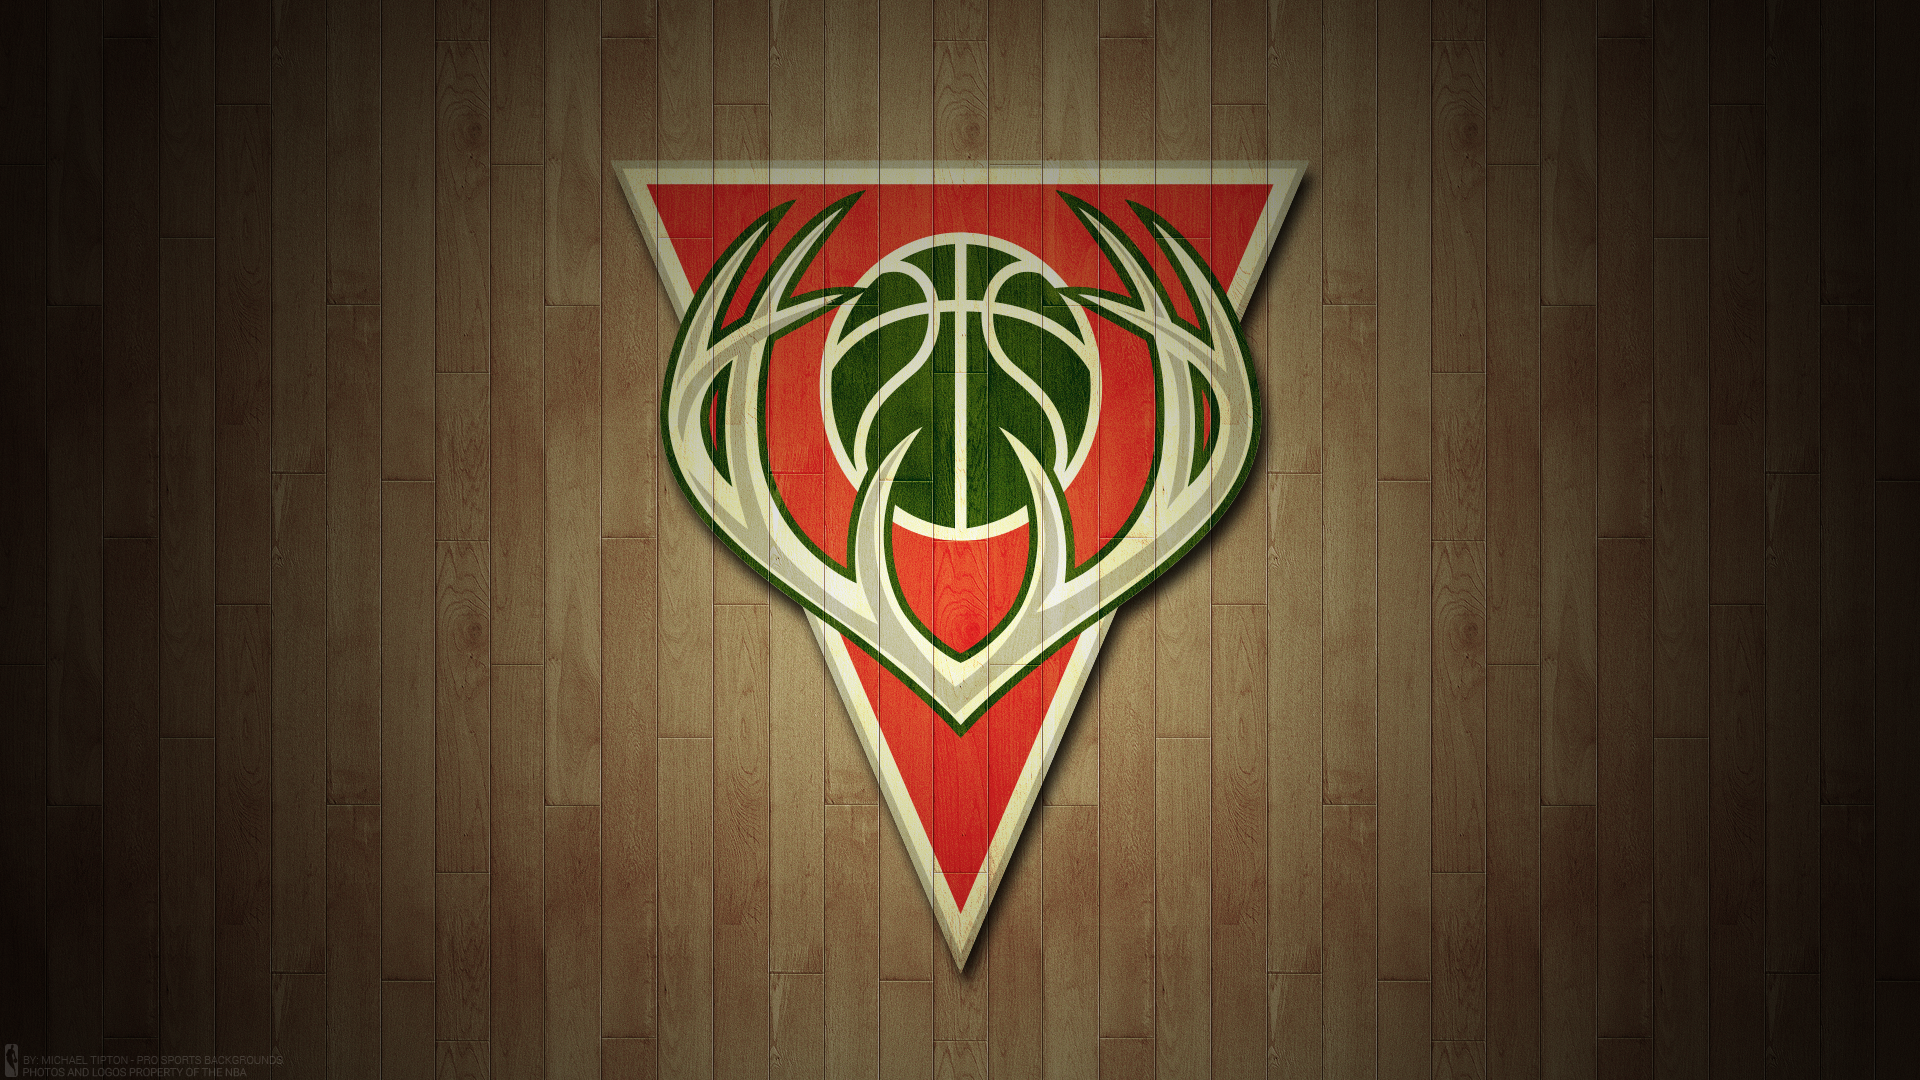 1920x1080 Milwaukee Bucks, Emblem, NBA, Basketball wallpaper PNG